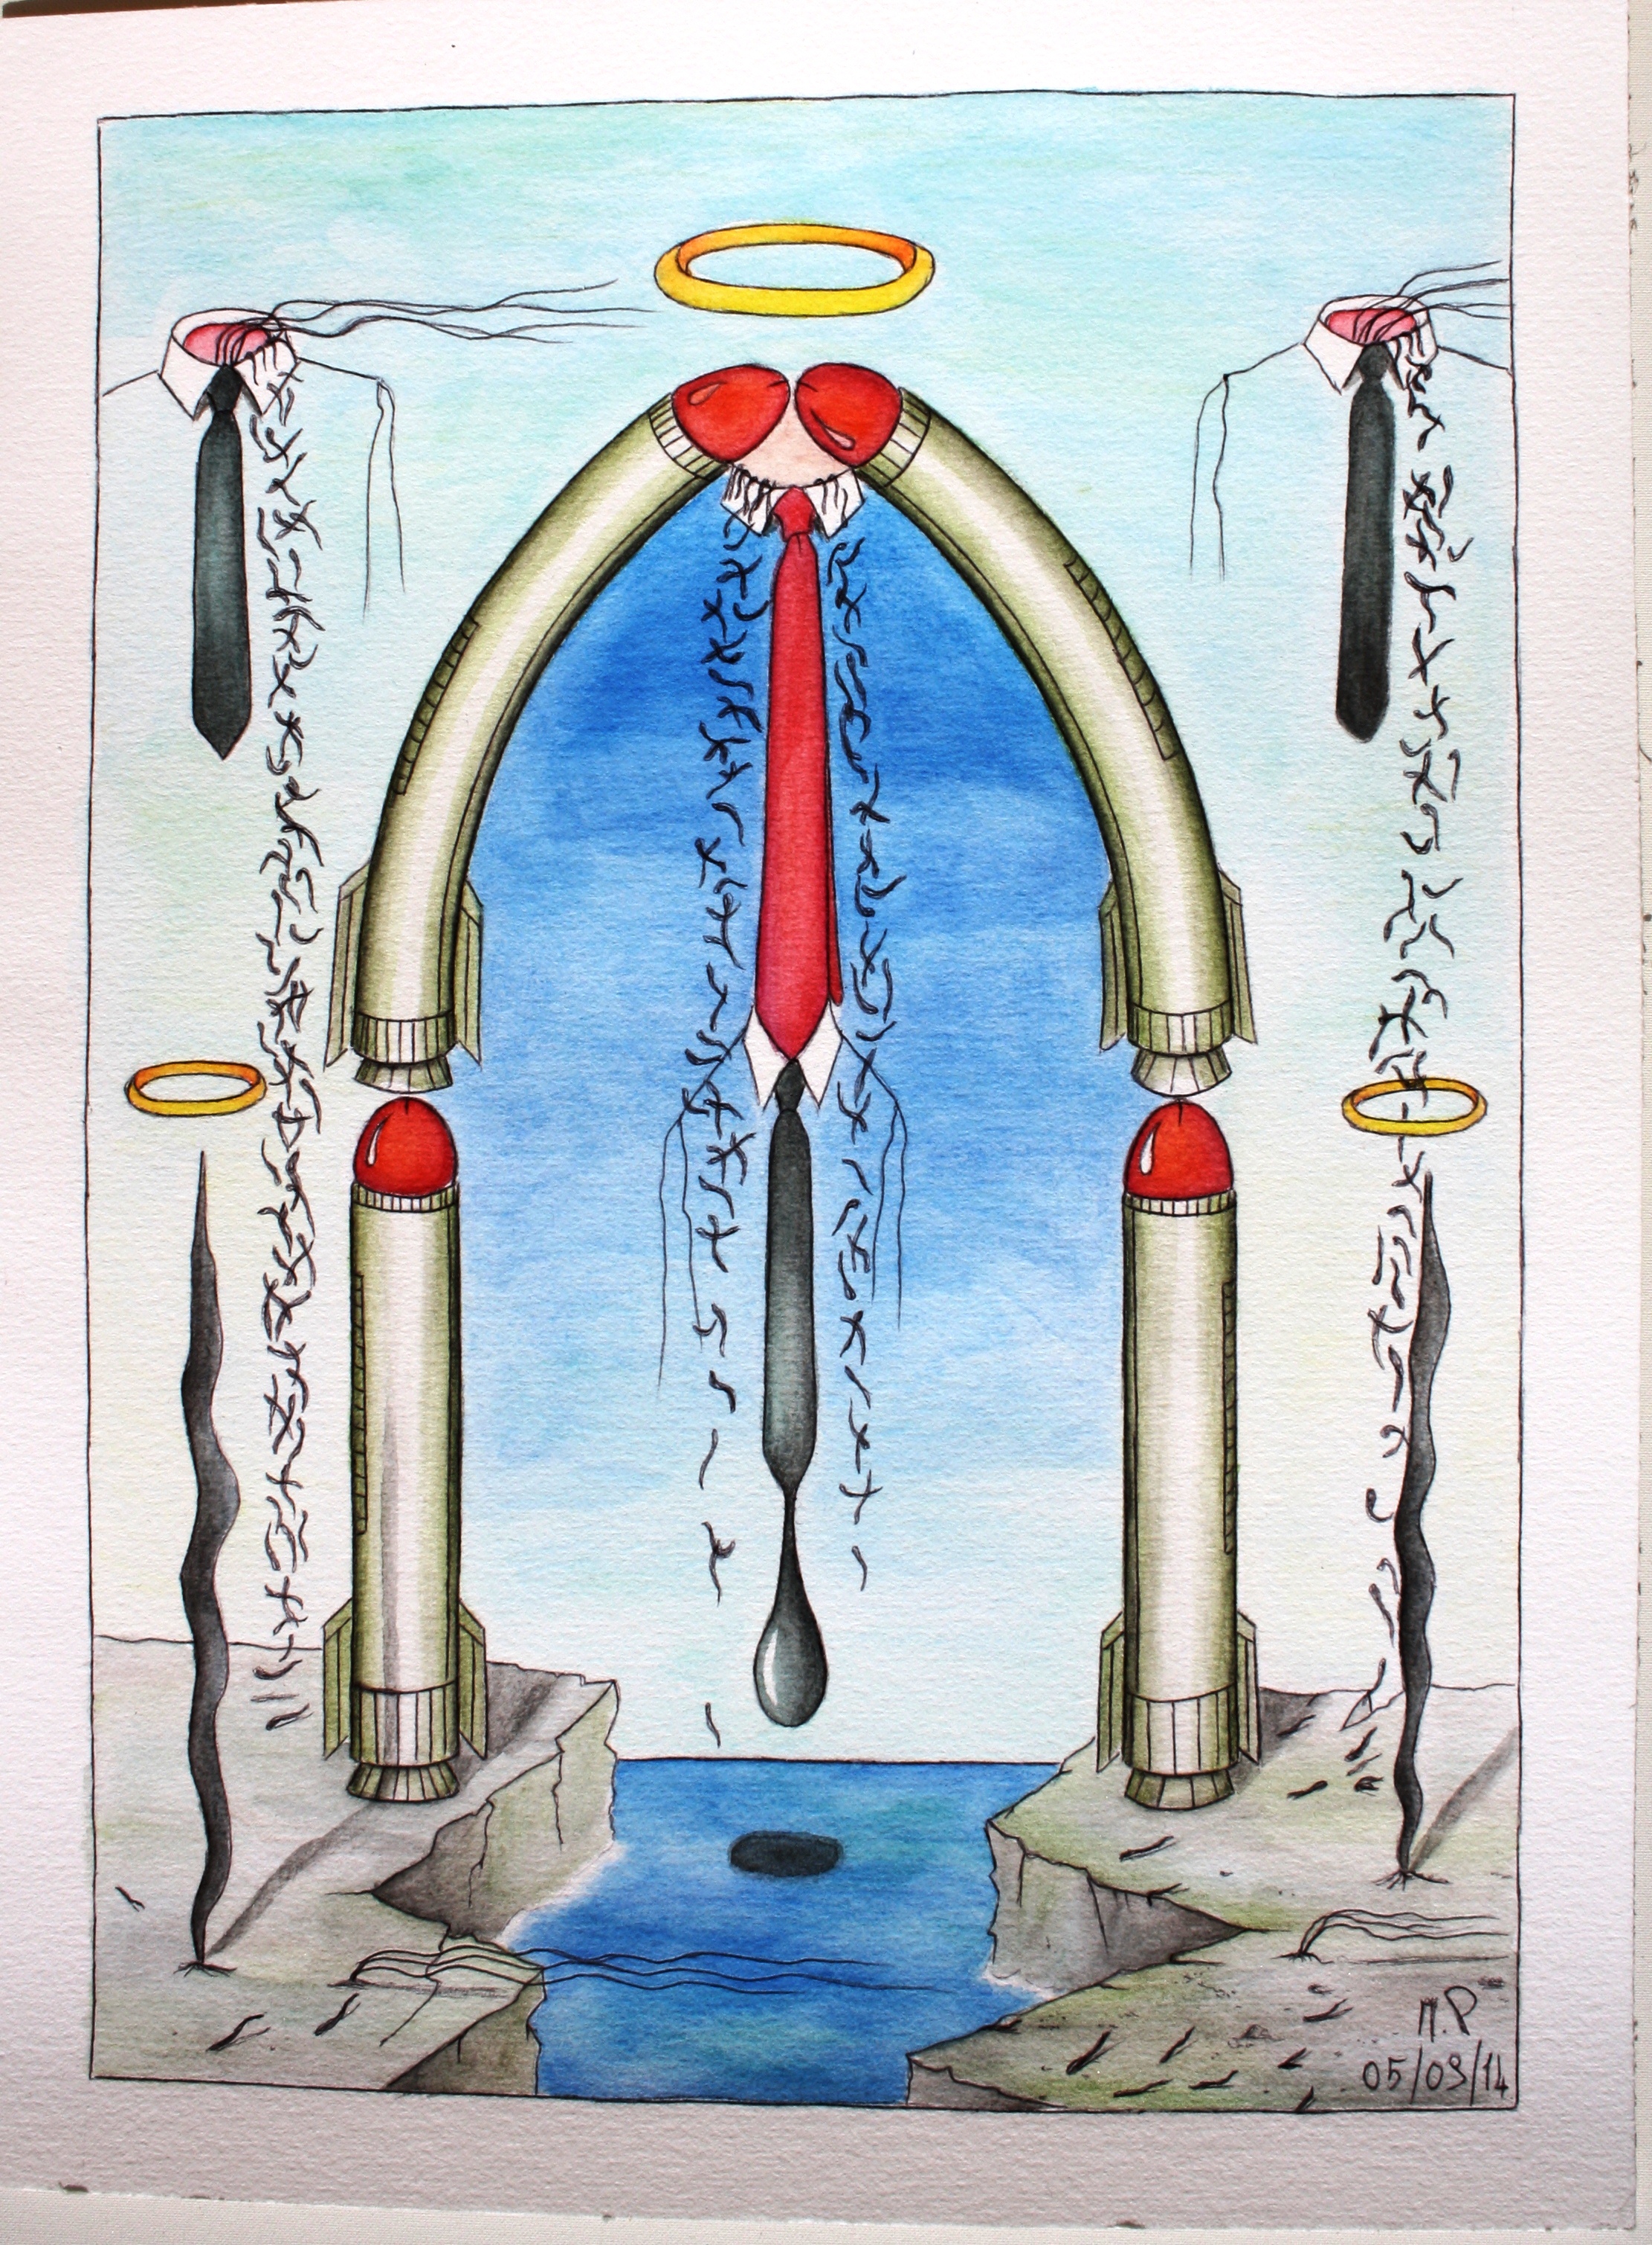 Principio e Fine (Beginning and End),2014 disegno a penna e acquerello (Pen drawing and watercolor)cm 30x40, Pasquale Mastrogiacomo, Acerno (SA).